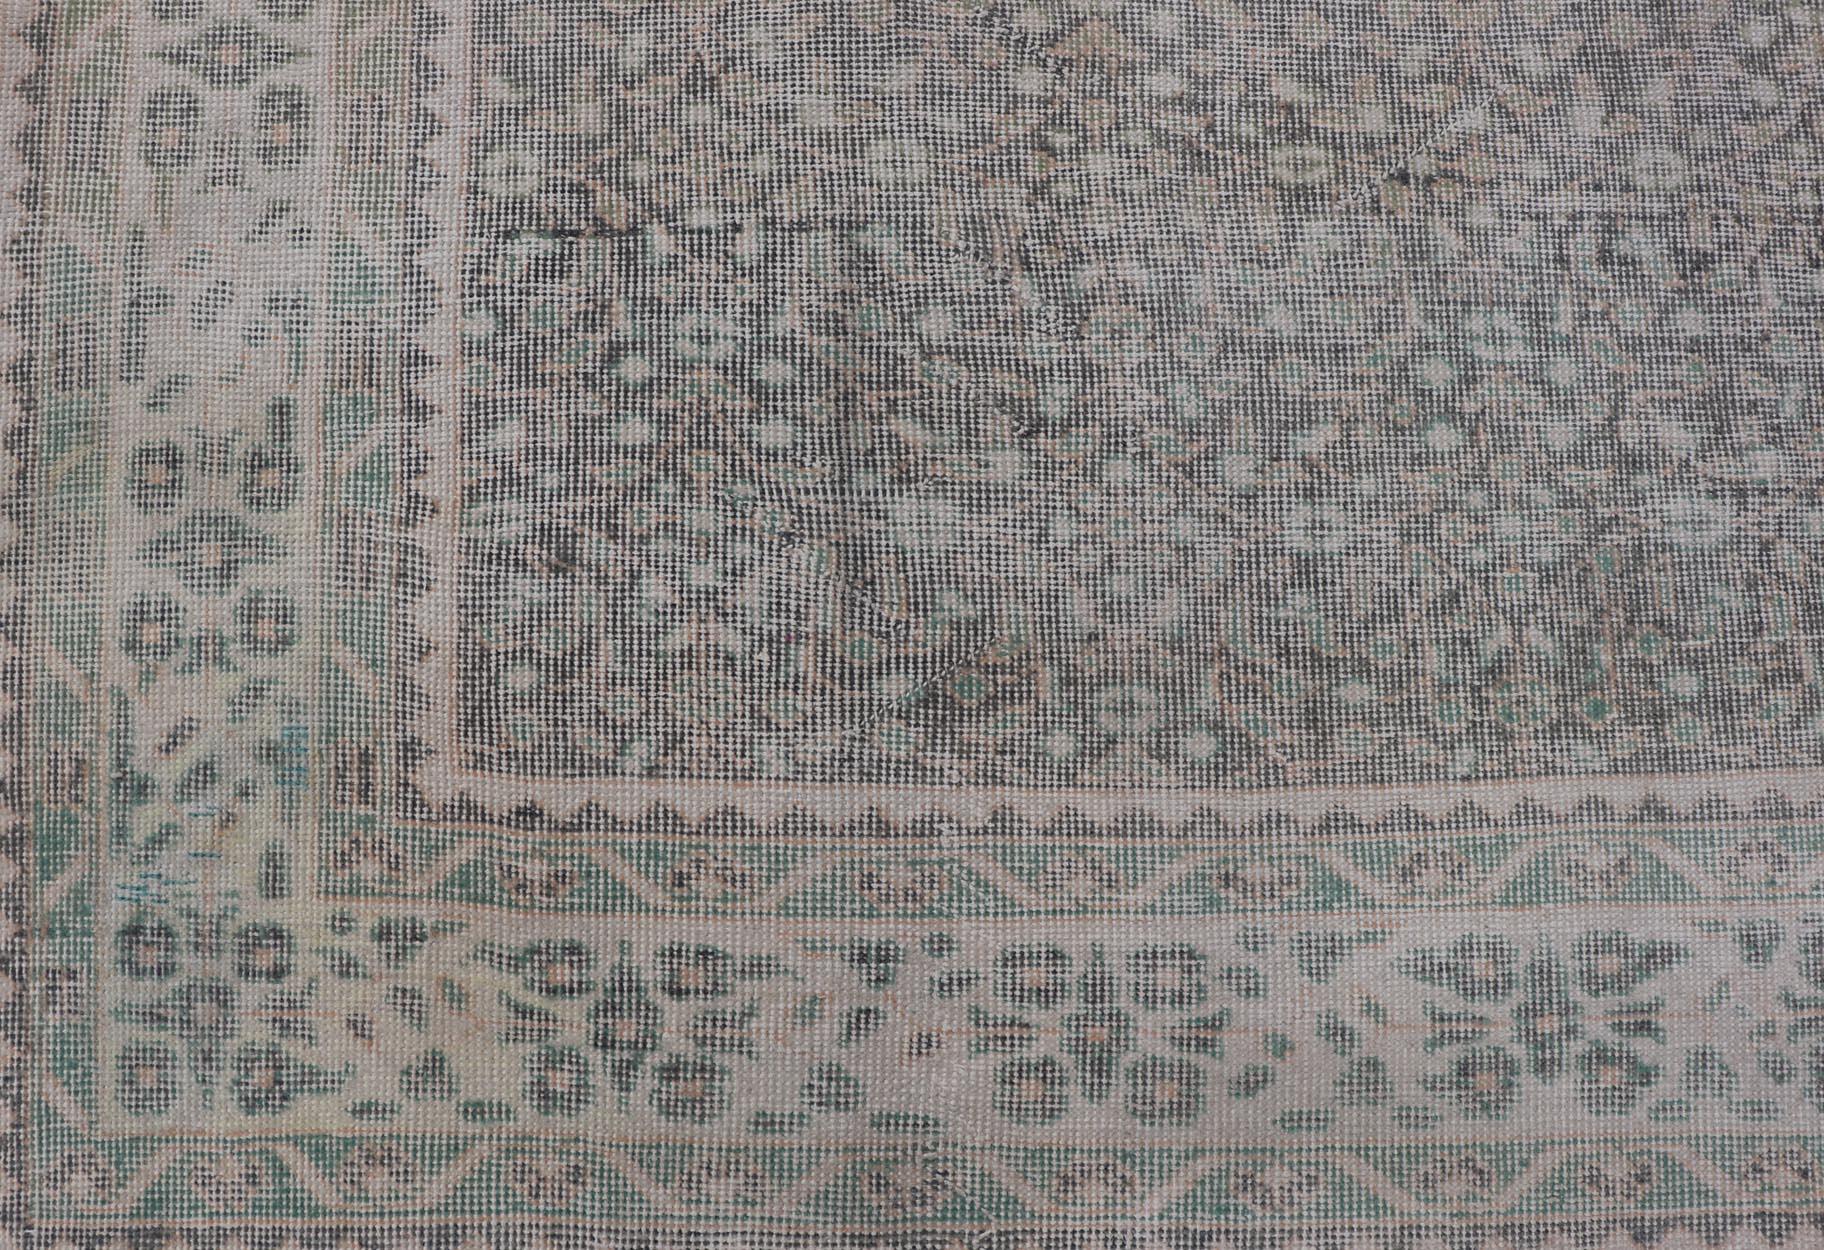 Dieser alte türkische Oushak-Teppich ist aus Wolle handgeknüpft und zeigt ein subgeometrisches, gestörtes Blumenmuster in Creme-, Blau-, Grün- und Elfenbeintönen. Eine komplementäre, mehrstufige Bordüre umgibt das gesamte Stück und macht es zu einer